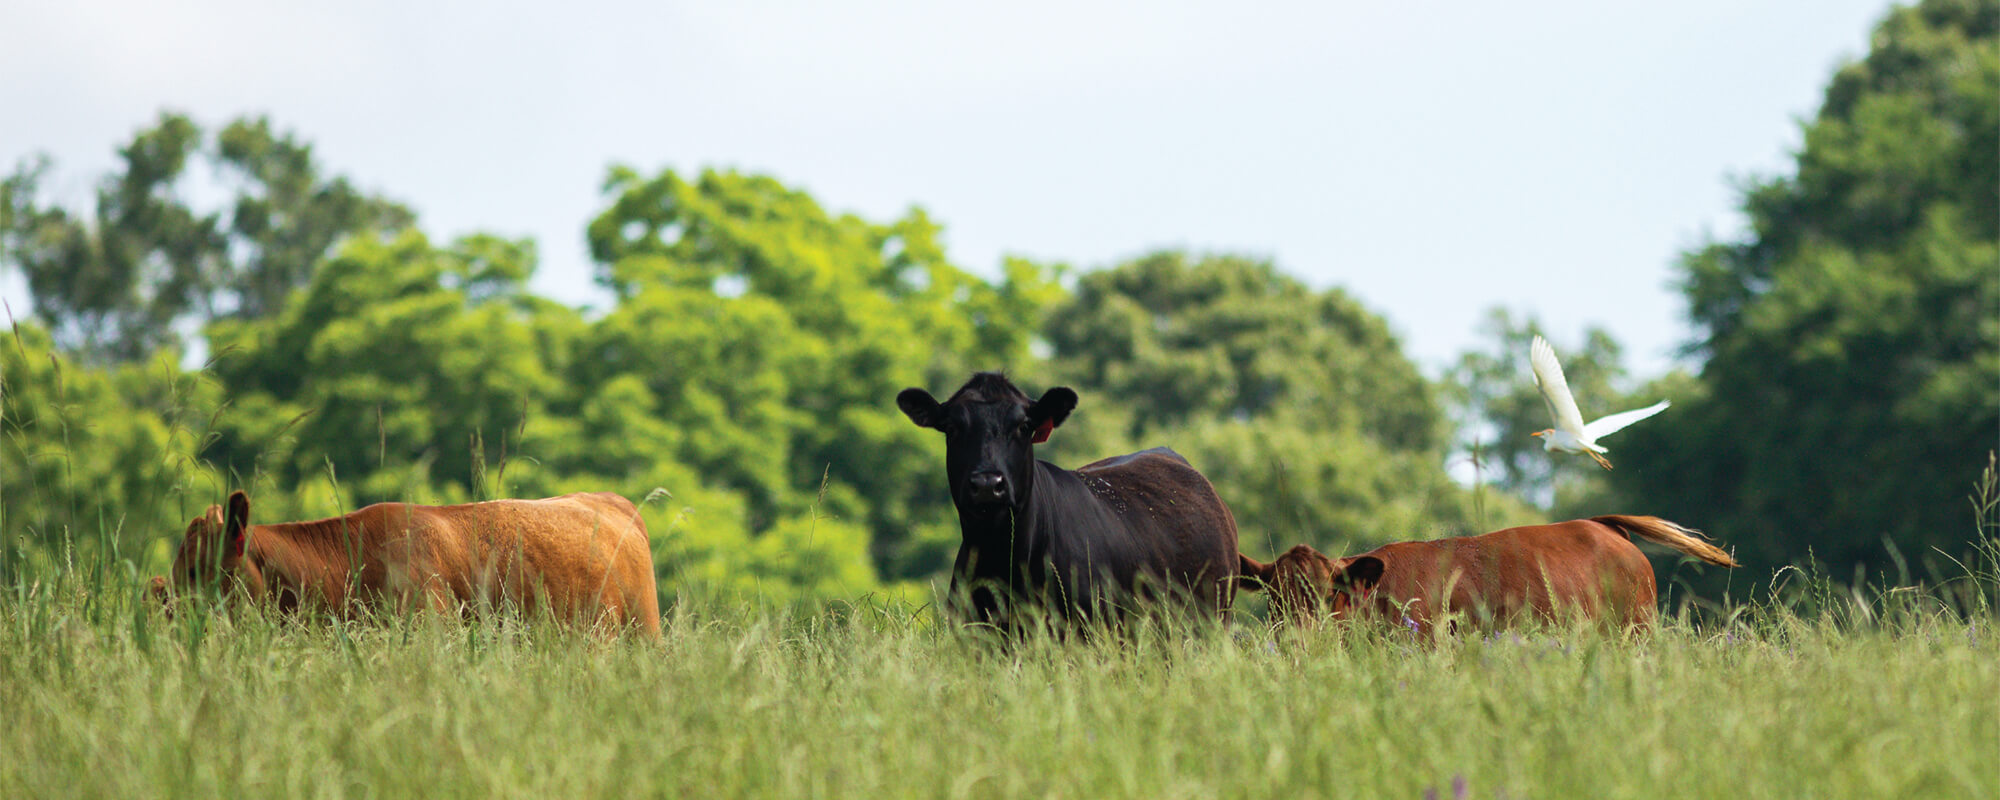 Cattle grazing in a regenerative pasture